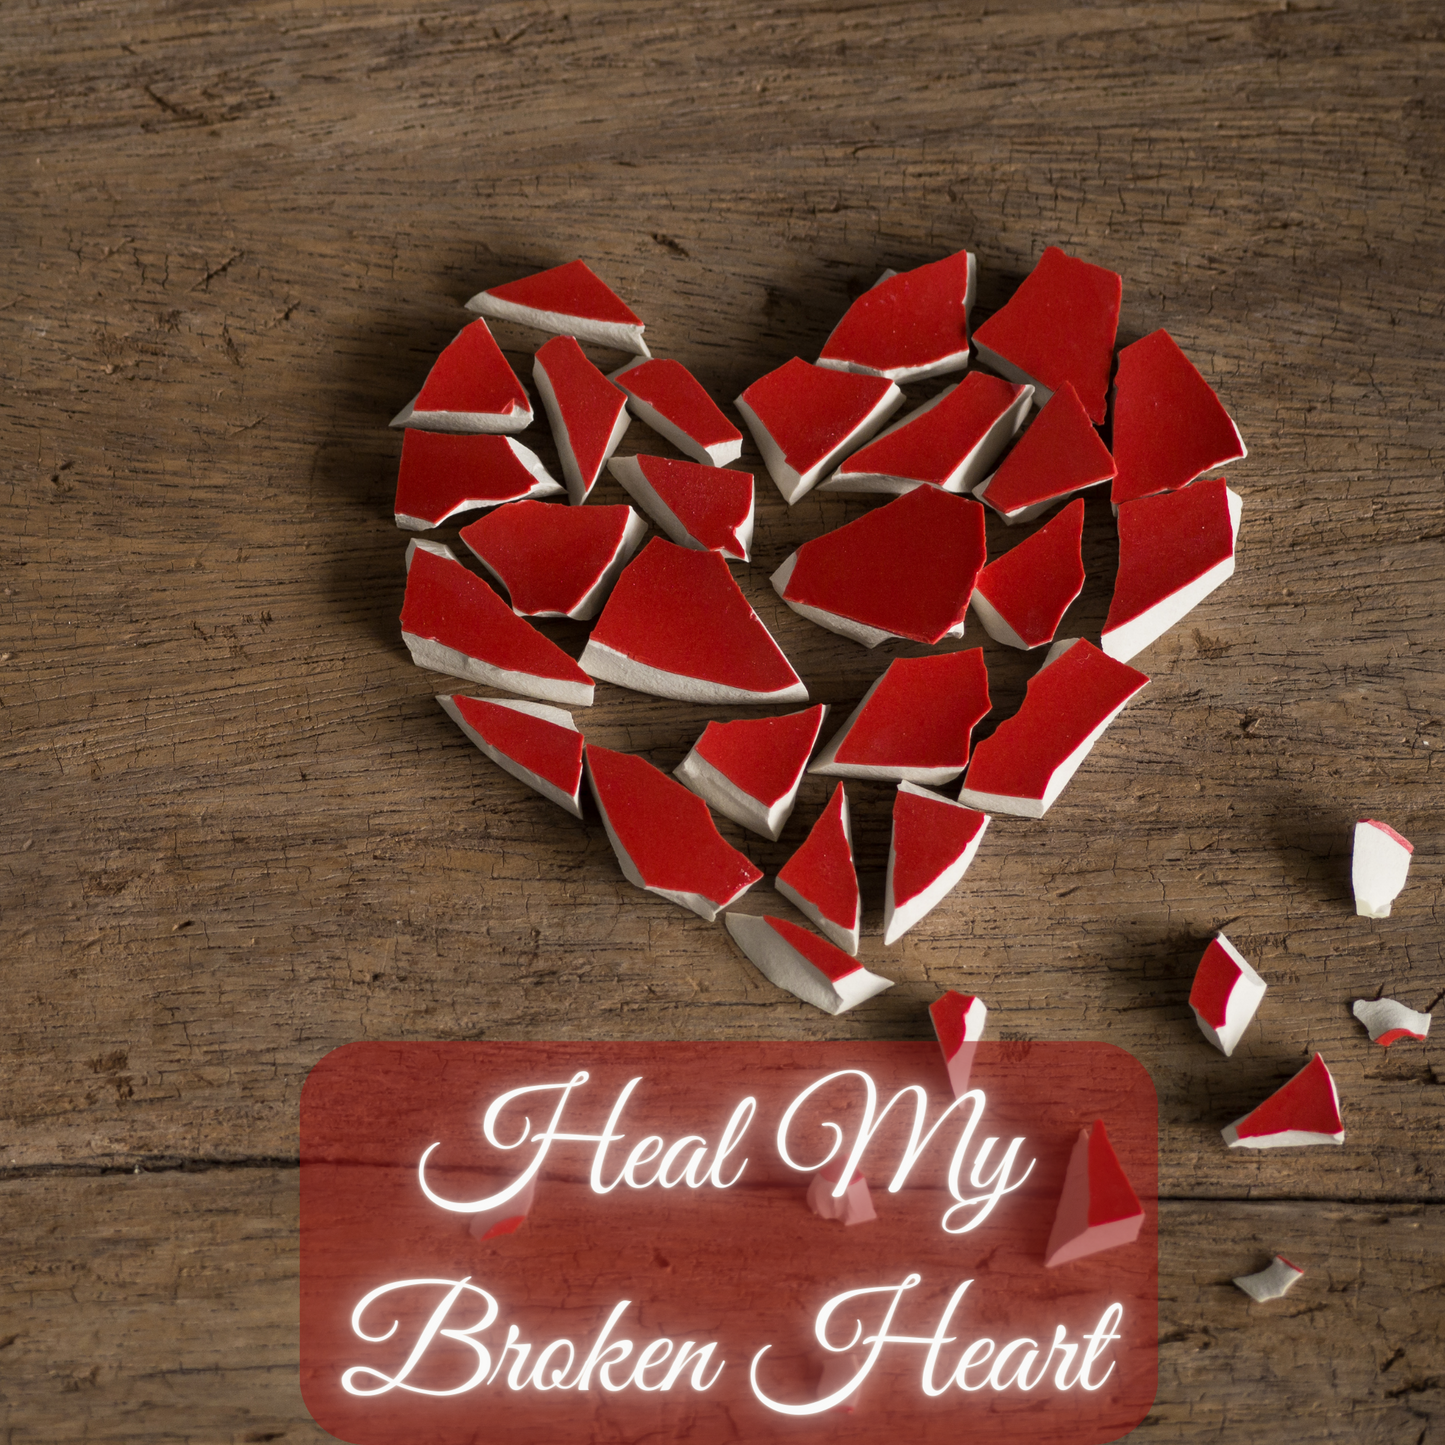 Heal My Broken Heart